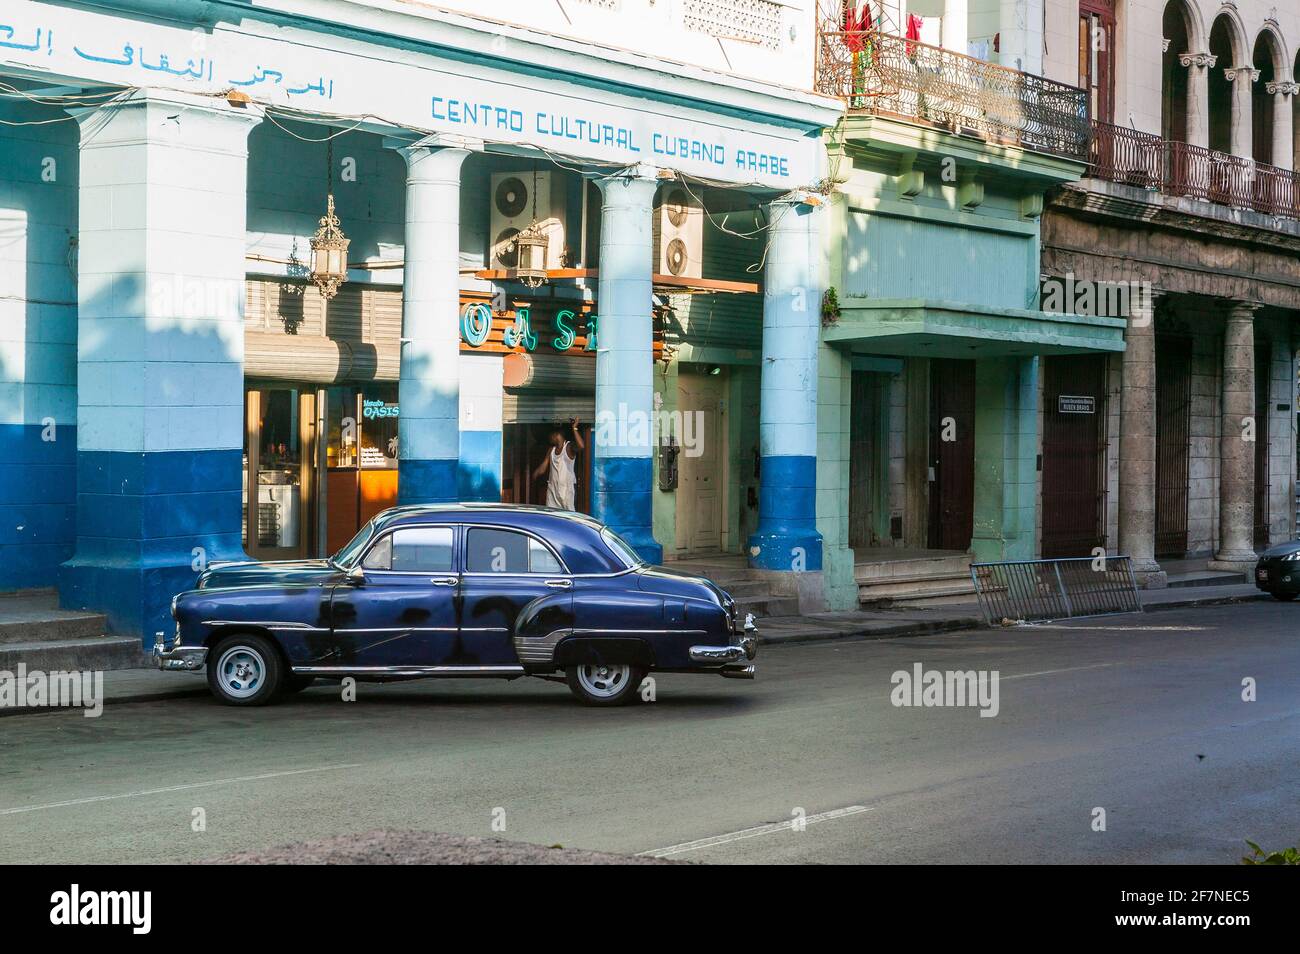 Une voiture américaine vintage bleue garée en face du Centre culturel arabe cubain de la Vieille Havane, Cuba. Banque D'Images